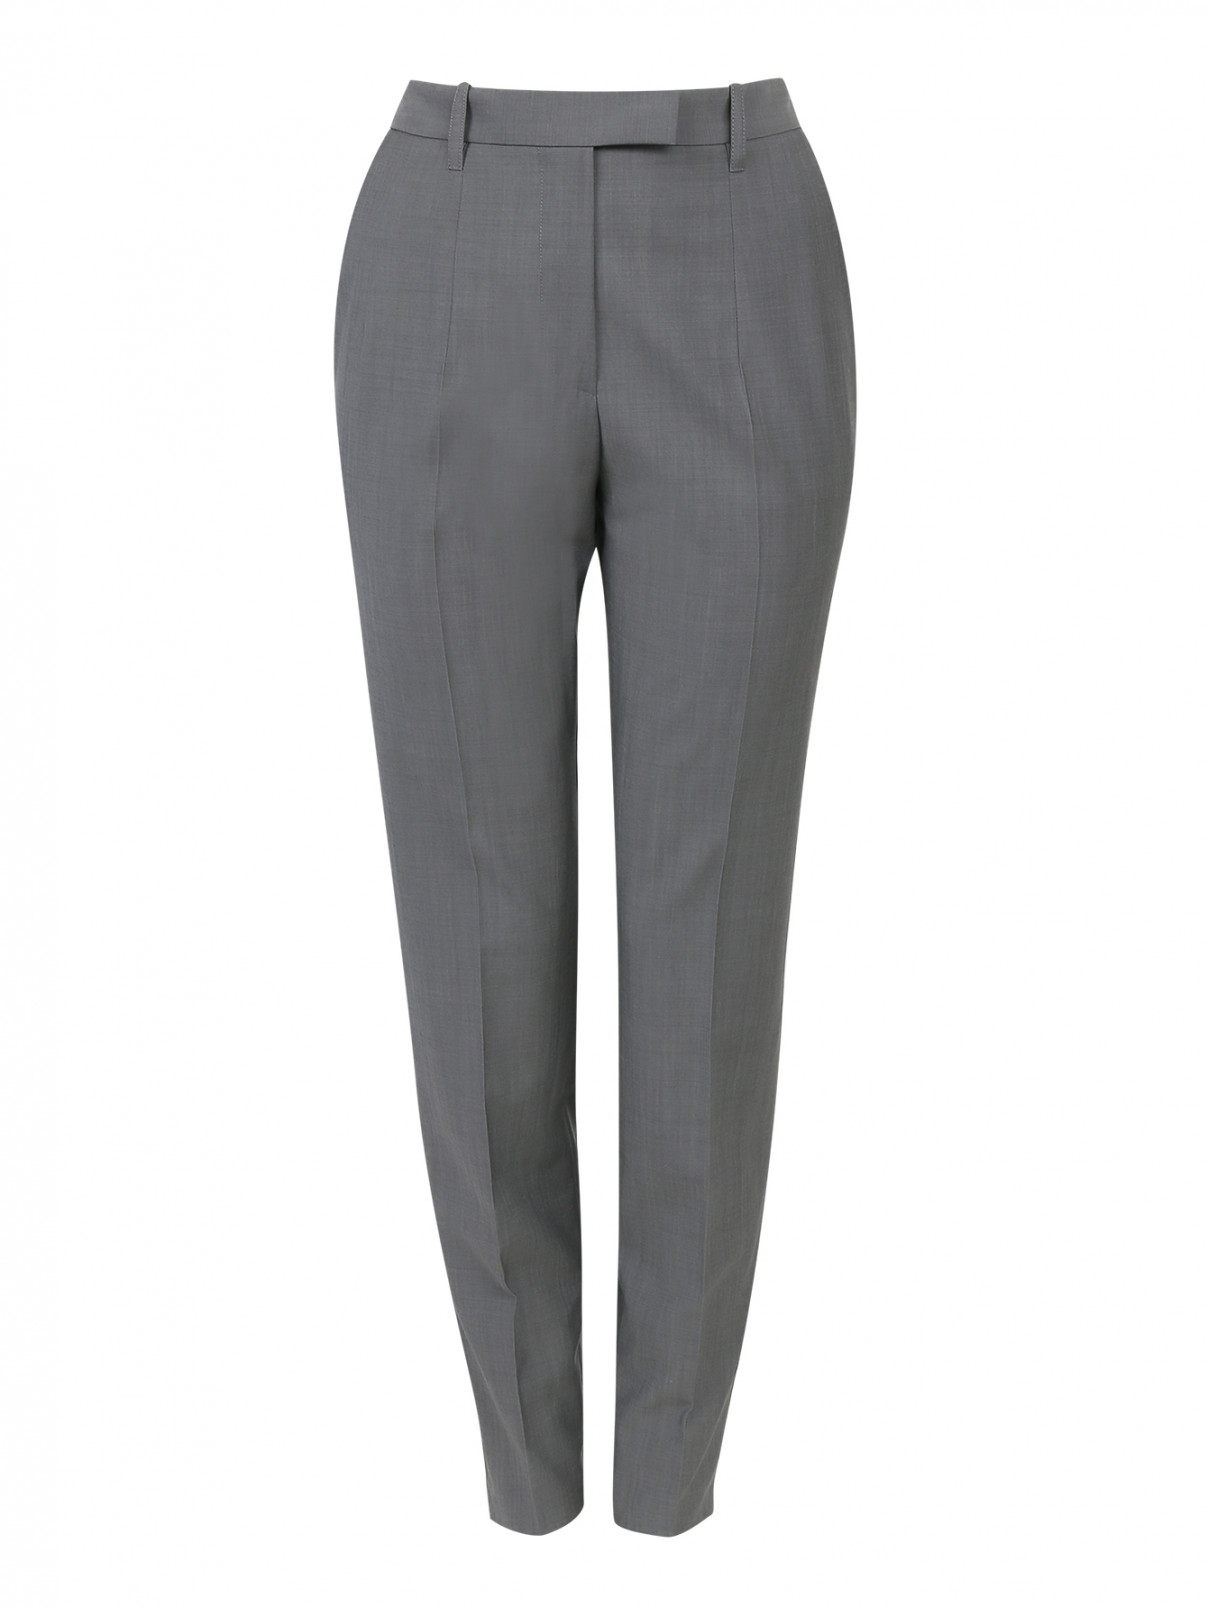 Узкие брюки из шерсти с боковыми карманами Barbara Bui  –  Общий вид  – Цвет:  Серый